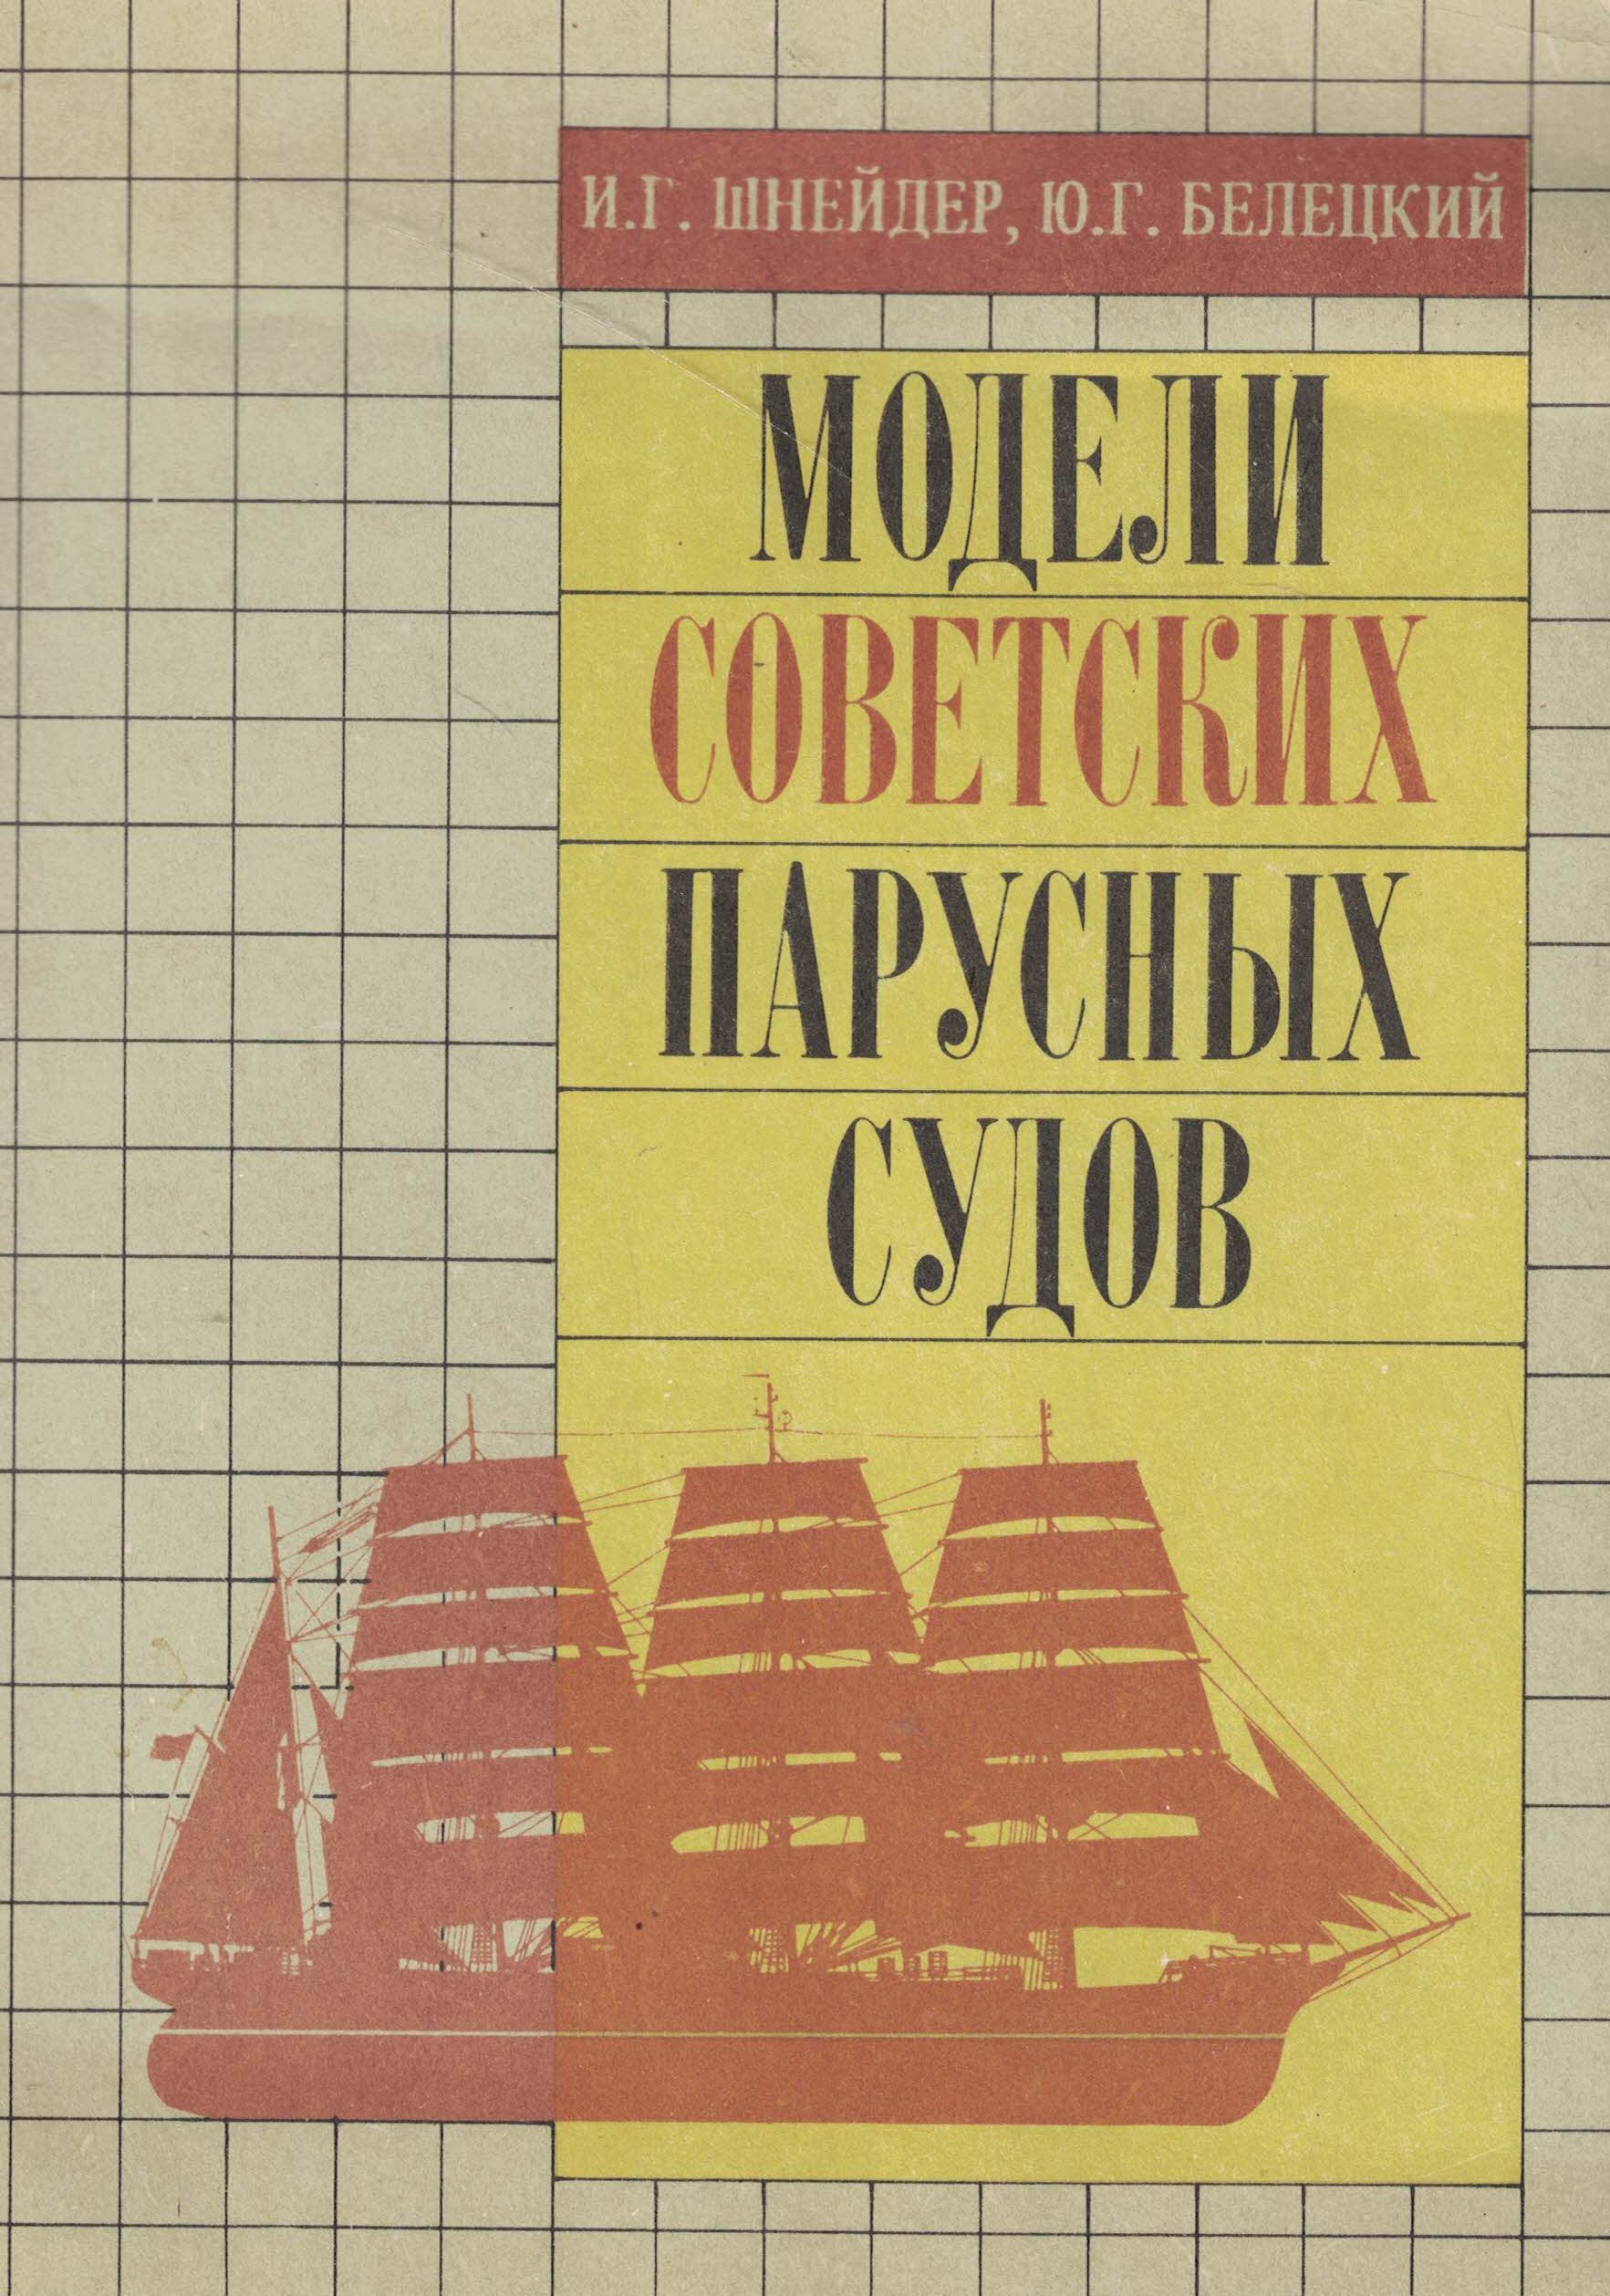 5040275  Шнейдер И.Г.  Модели советских парусных судов